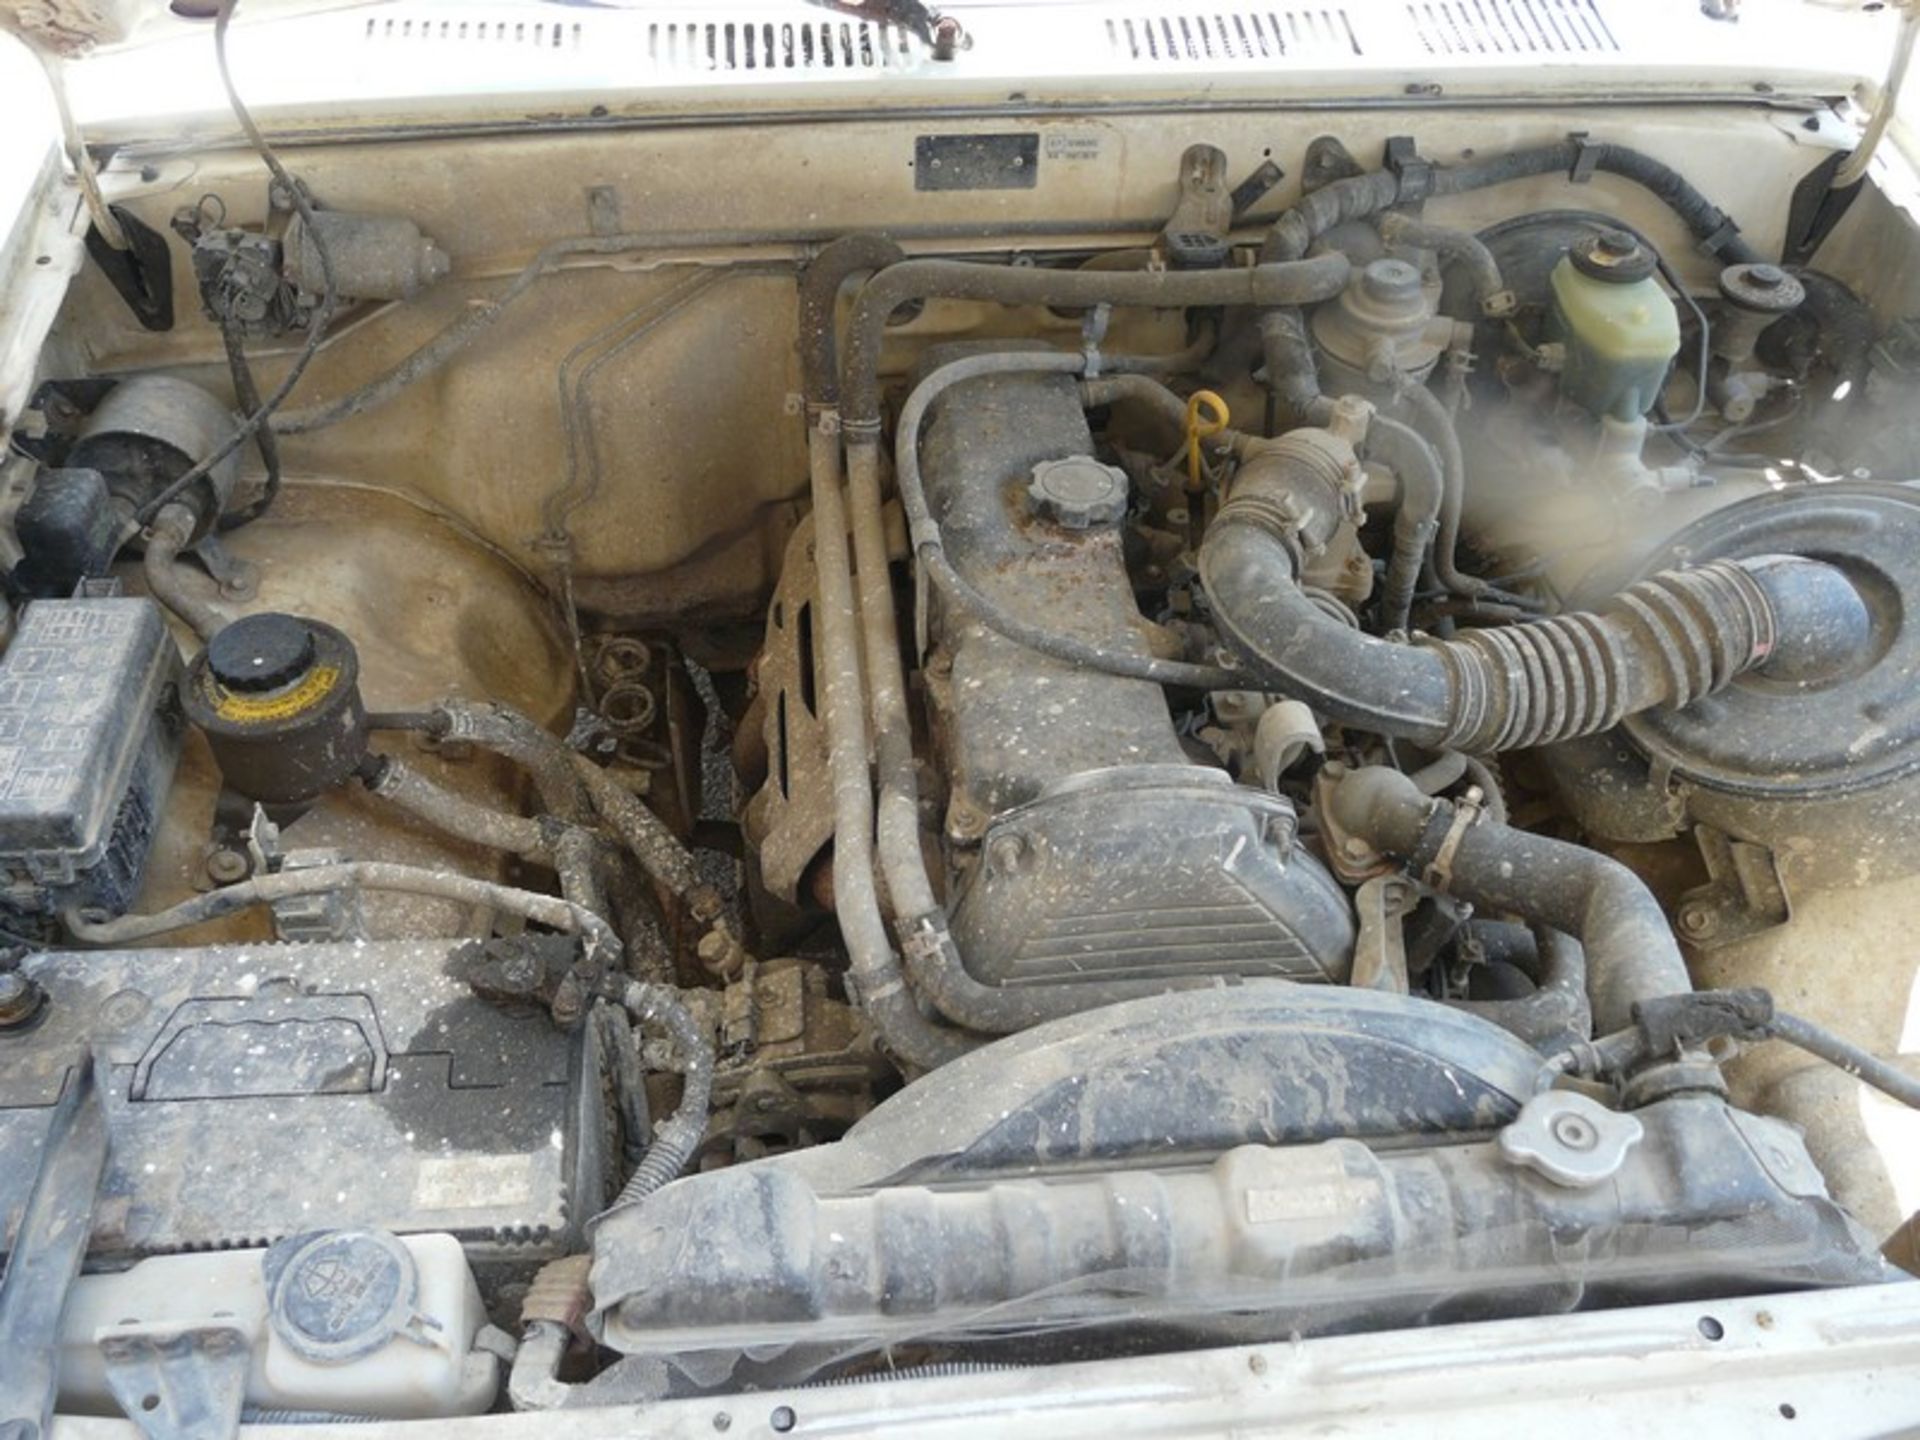 VW TARO 2,4D, KM: 295510, DIESEL, REG: NBY 4247,YEAR: 1996 (Located in Greece - Orestiada) Greek - Image 11 of 11